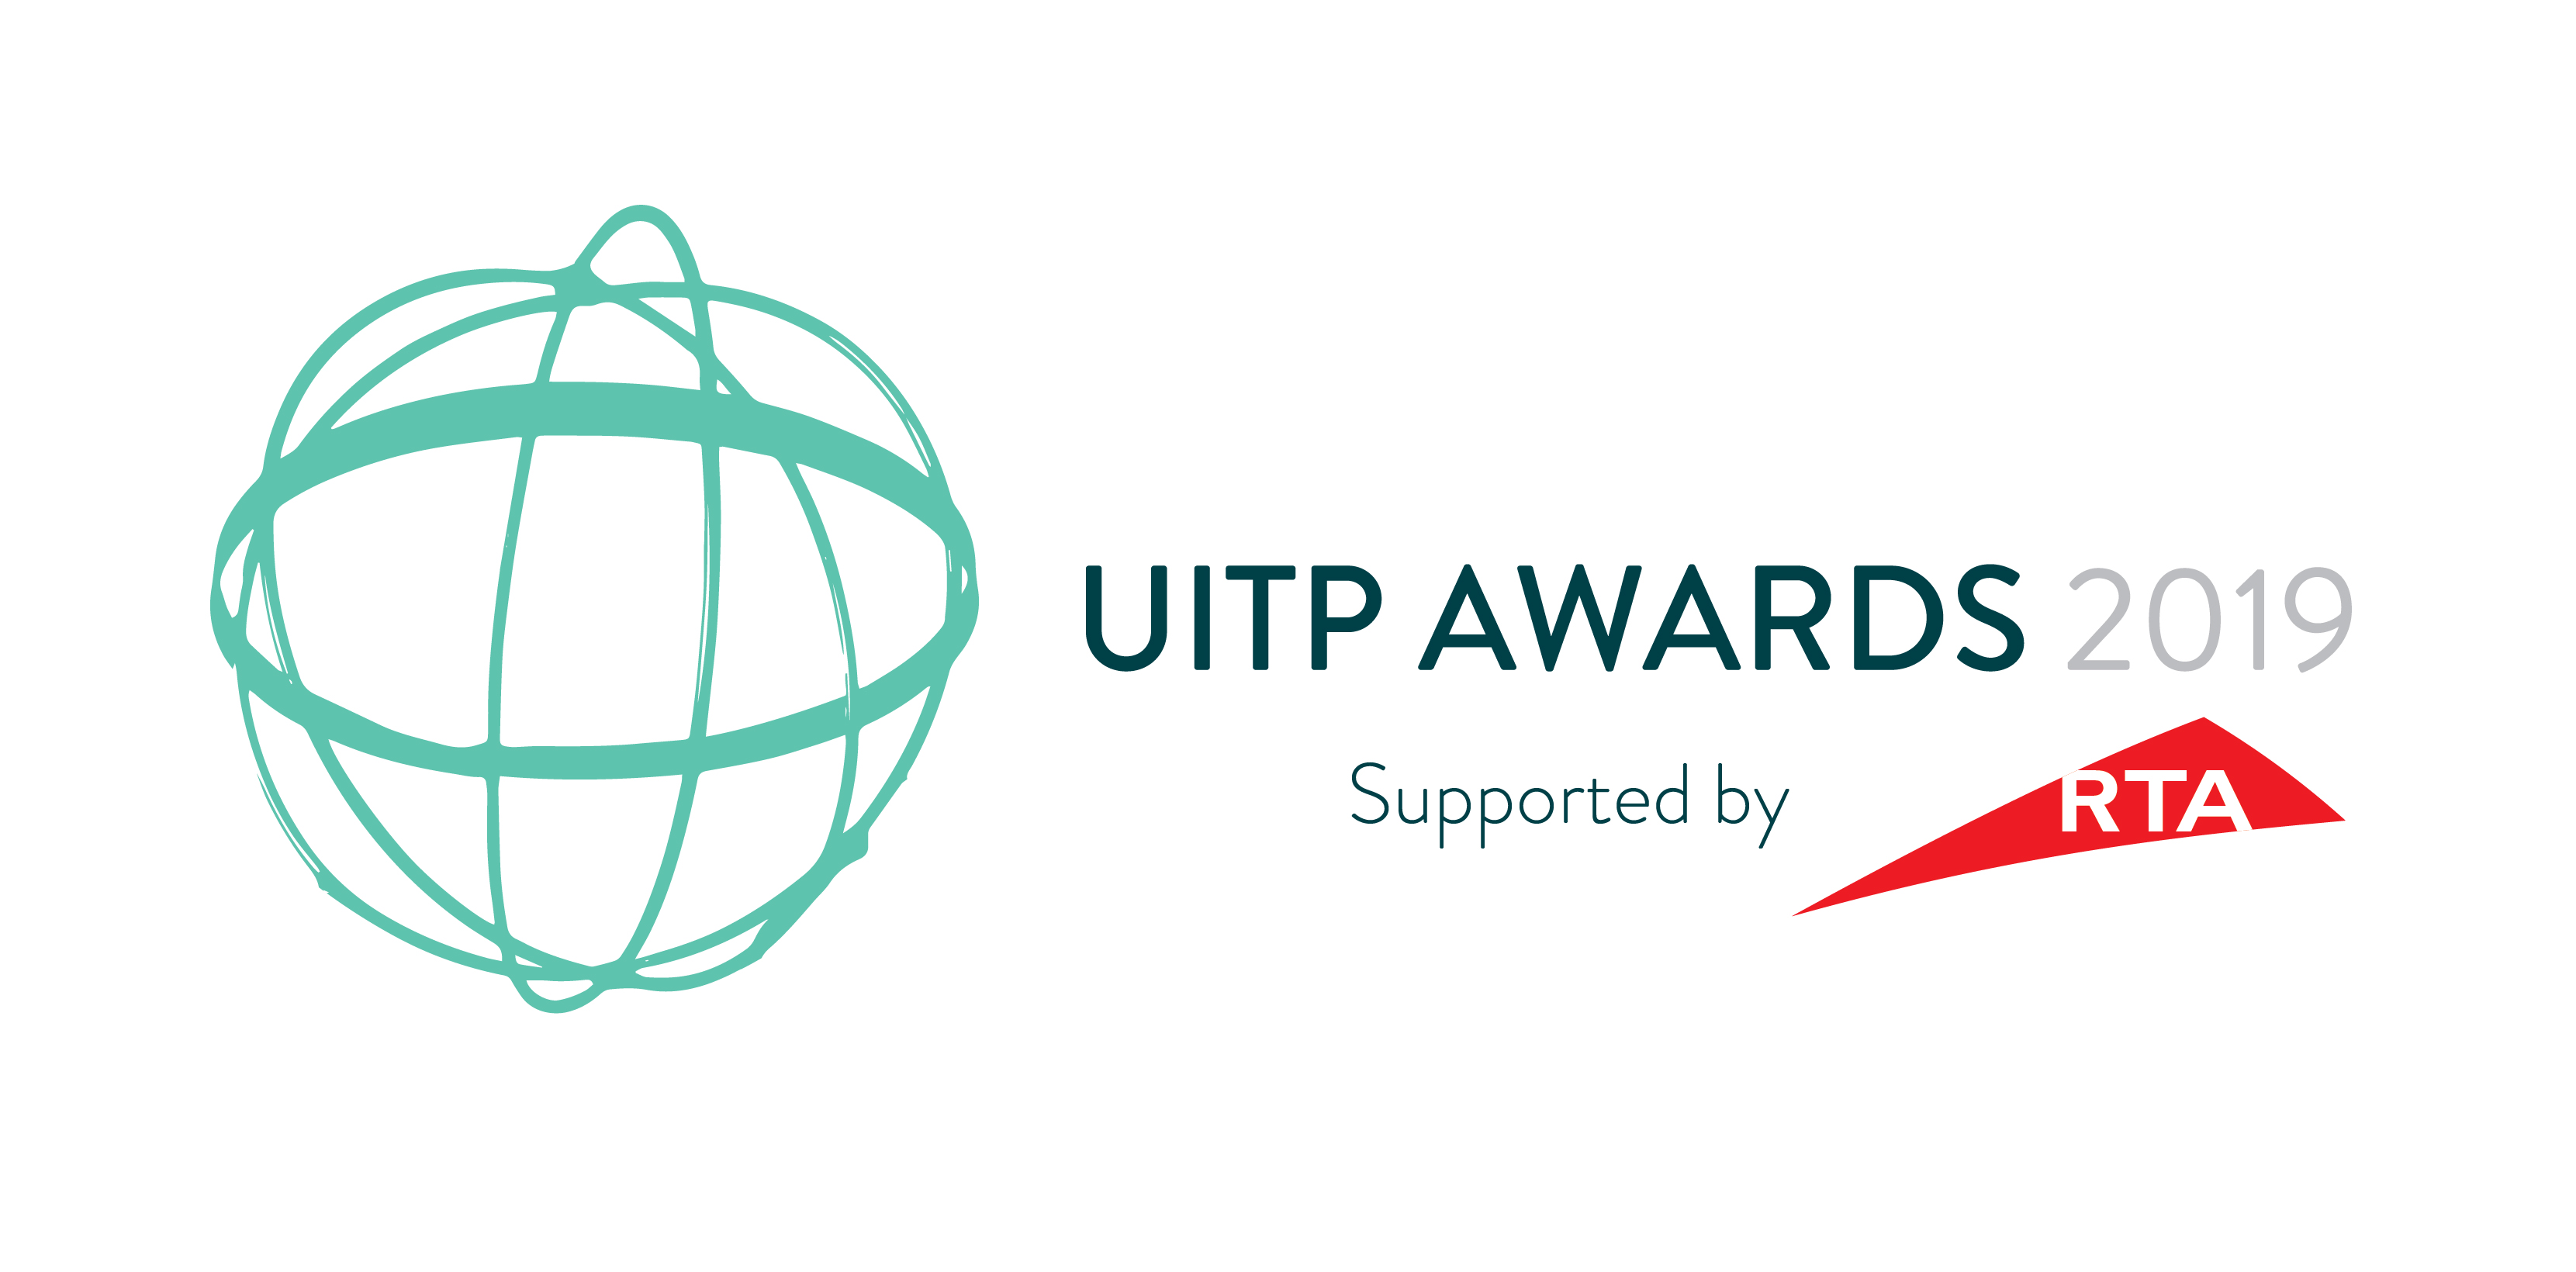 FAIRTIQ remporte le prix UITP et lance ses services à Turku | FAIRTIQ